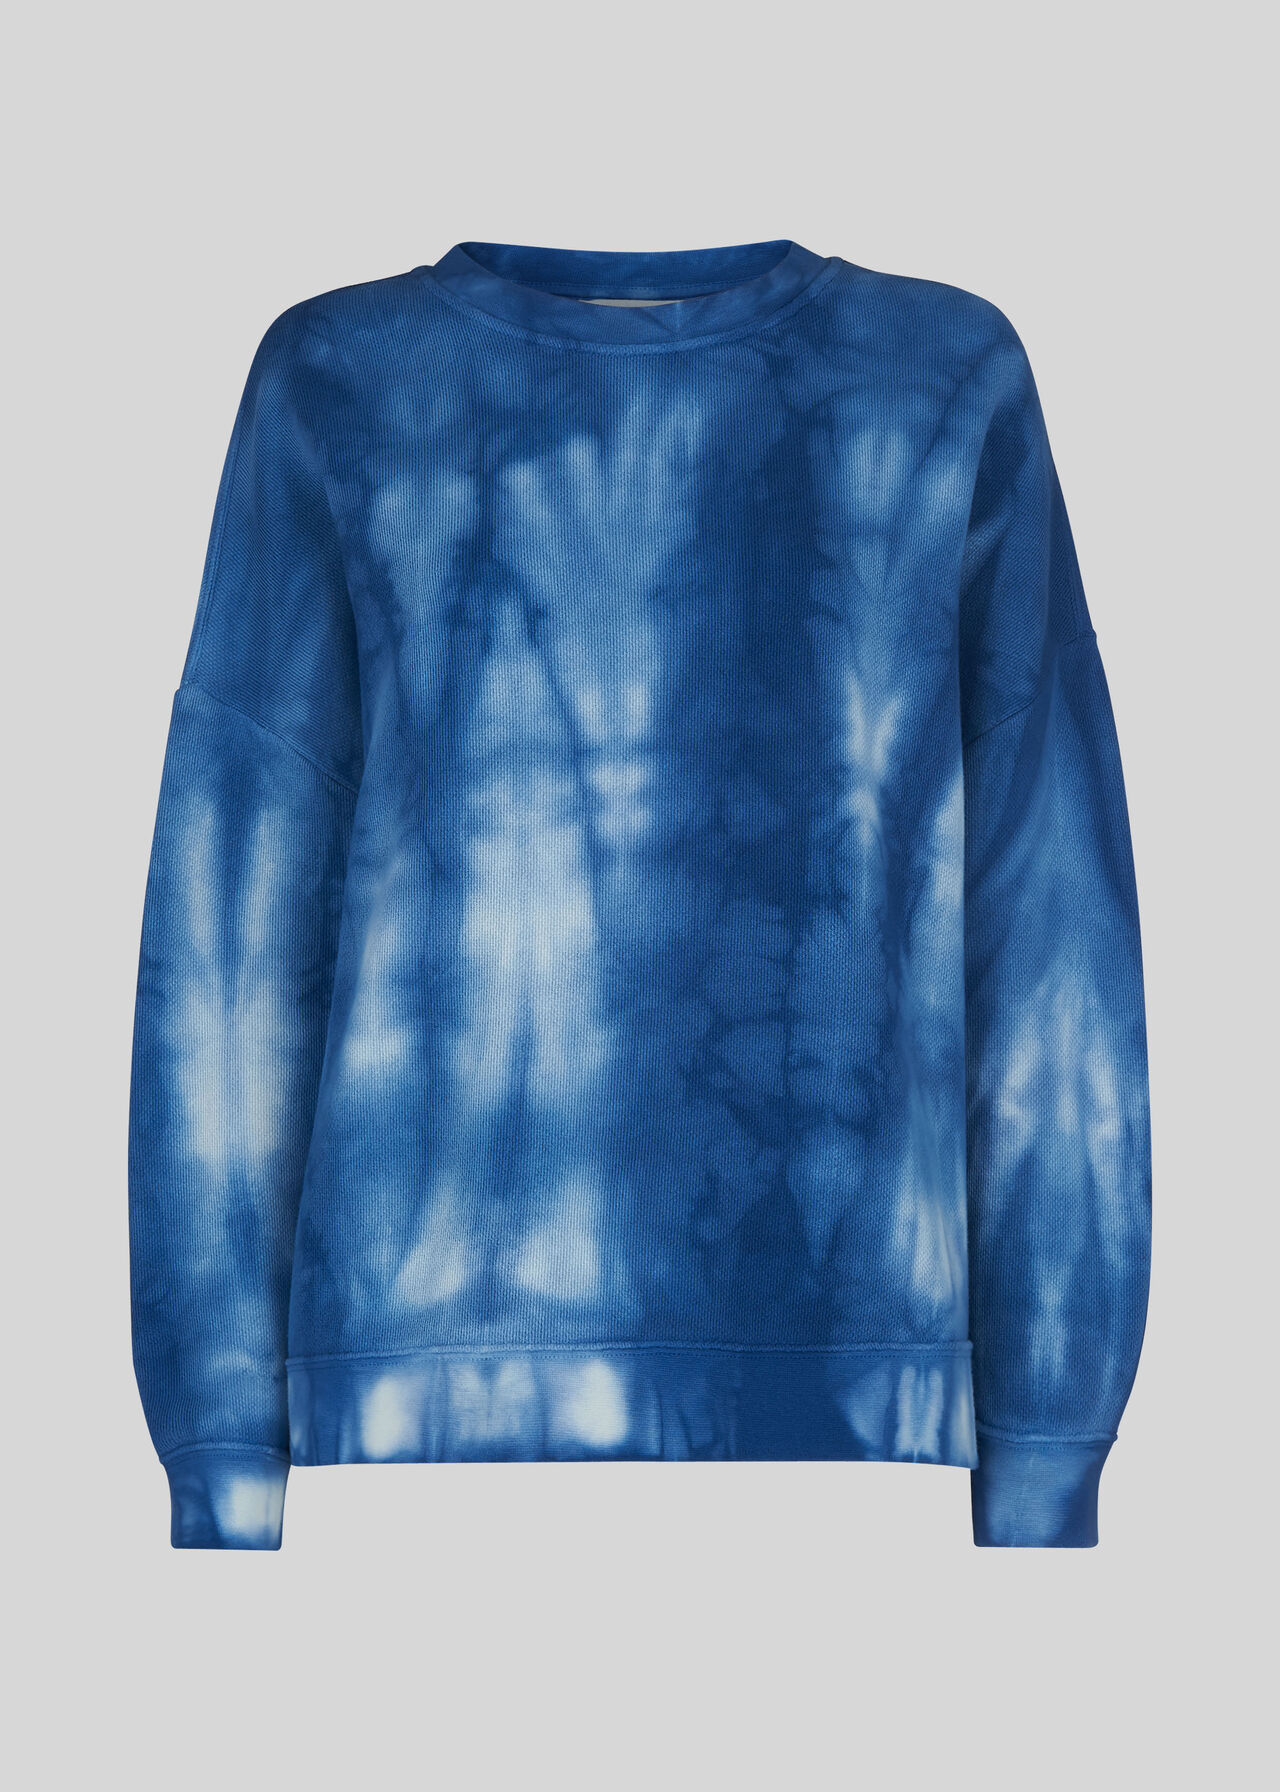 Blue Tie Dye Sweatshirt | WHISTLES